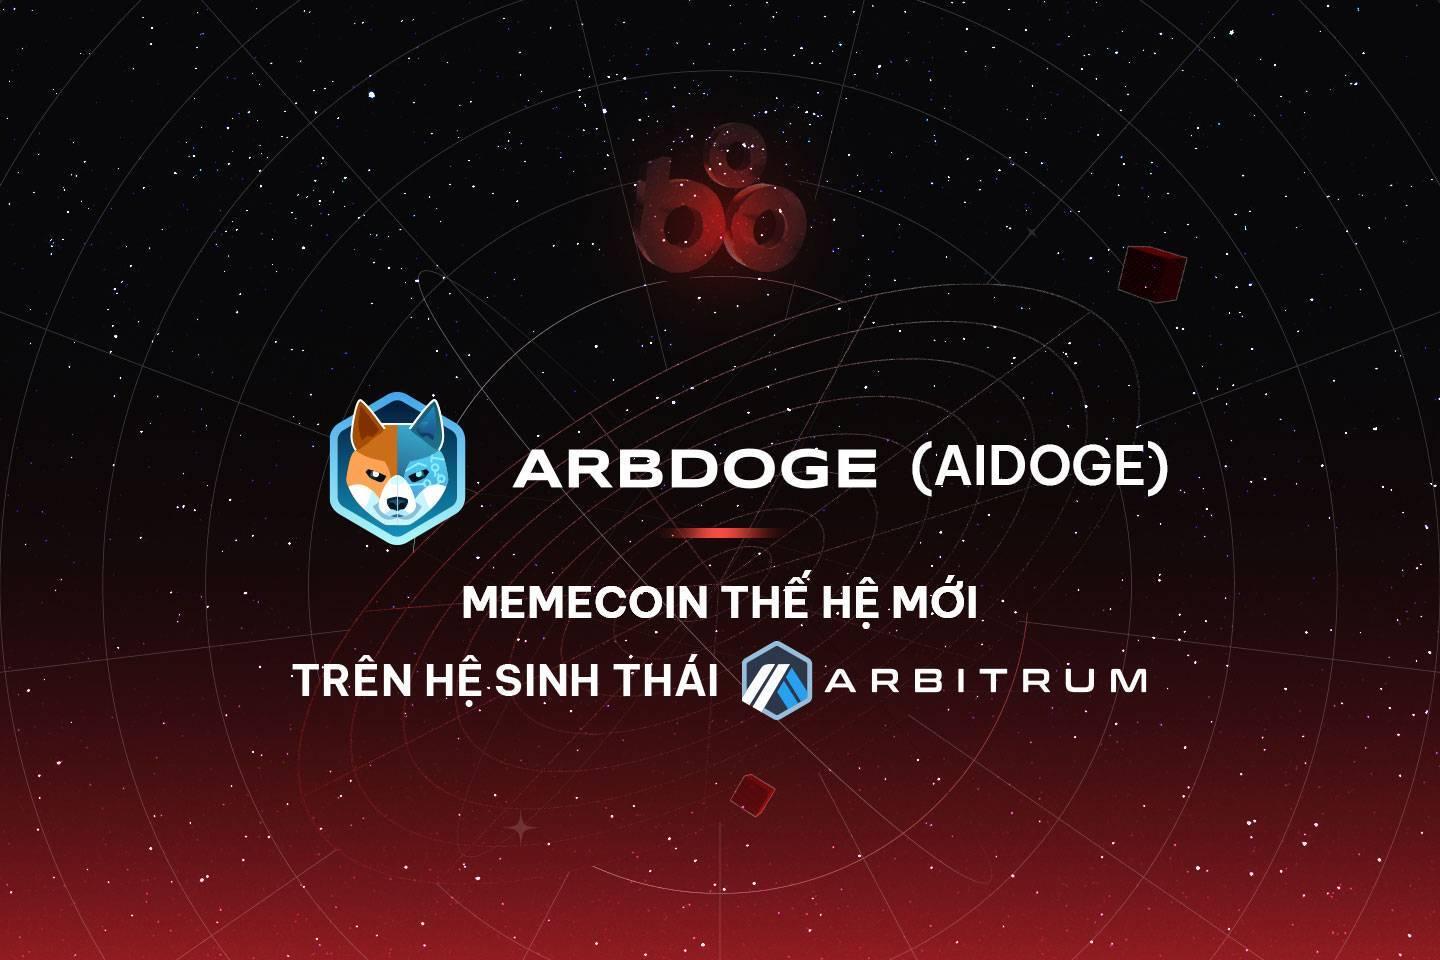 arbdoge-ai-aidoge-memecoin-the-he-moi-tren-he-sinh-thai-arbitrum